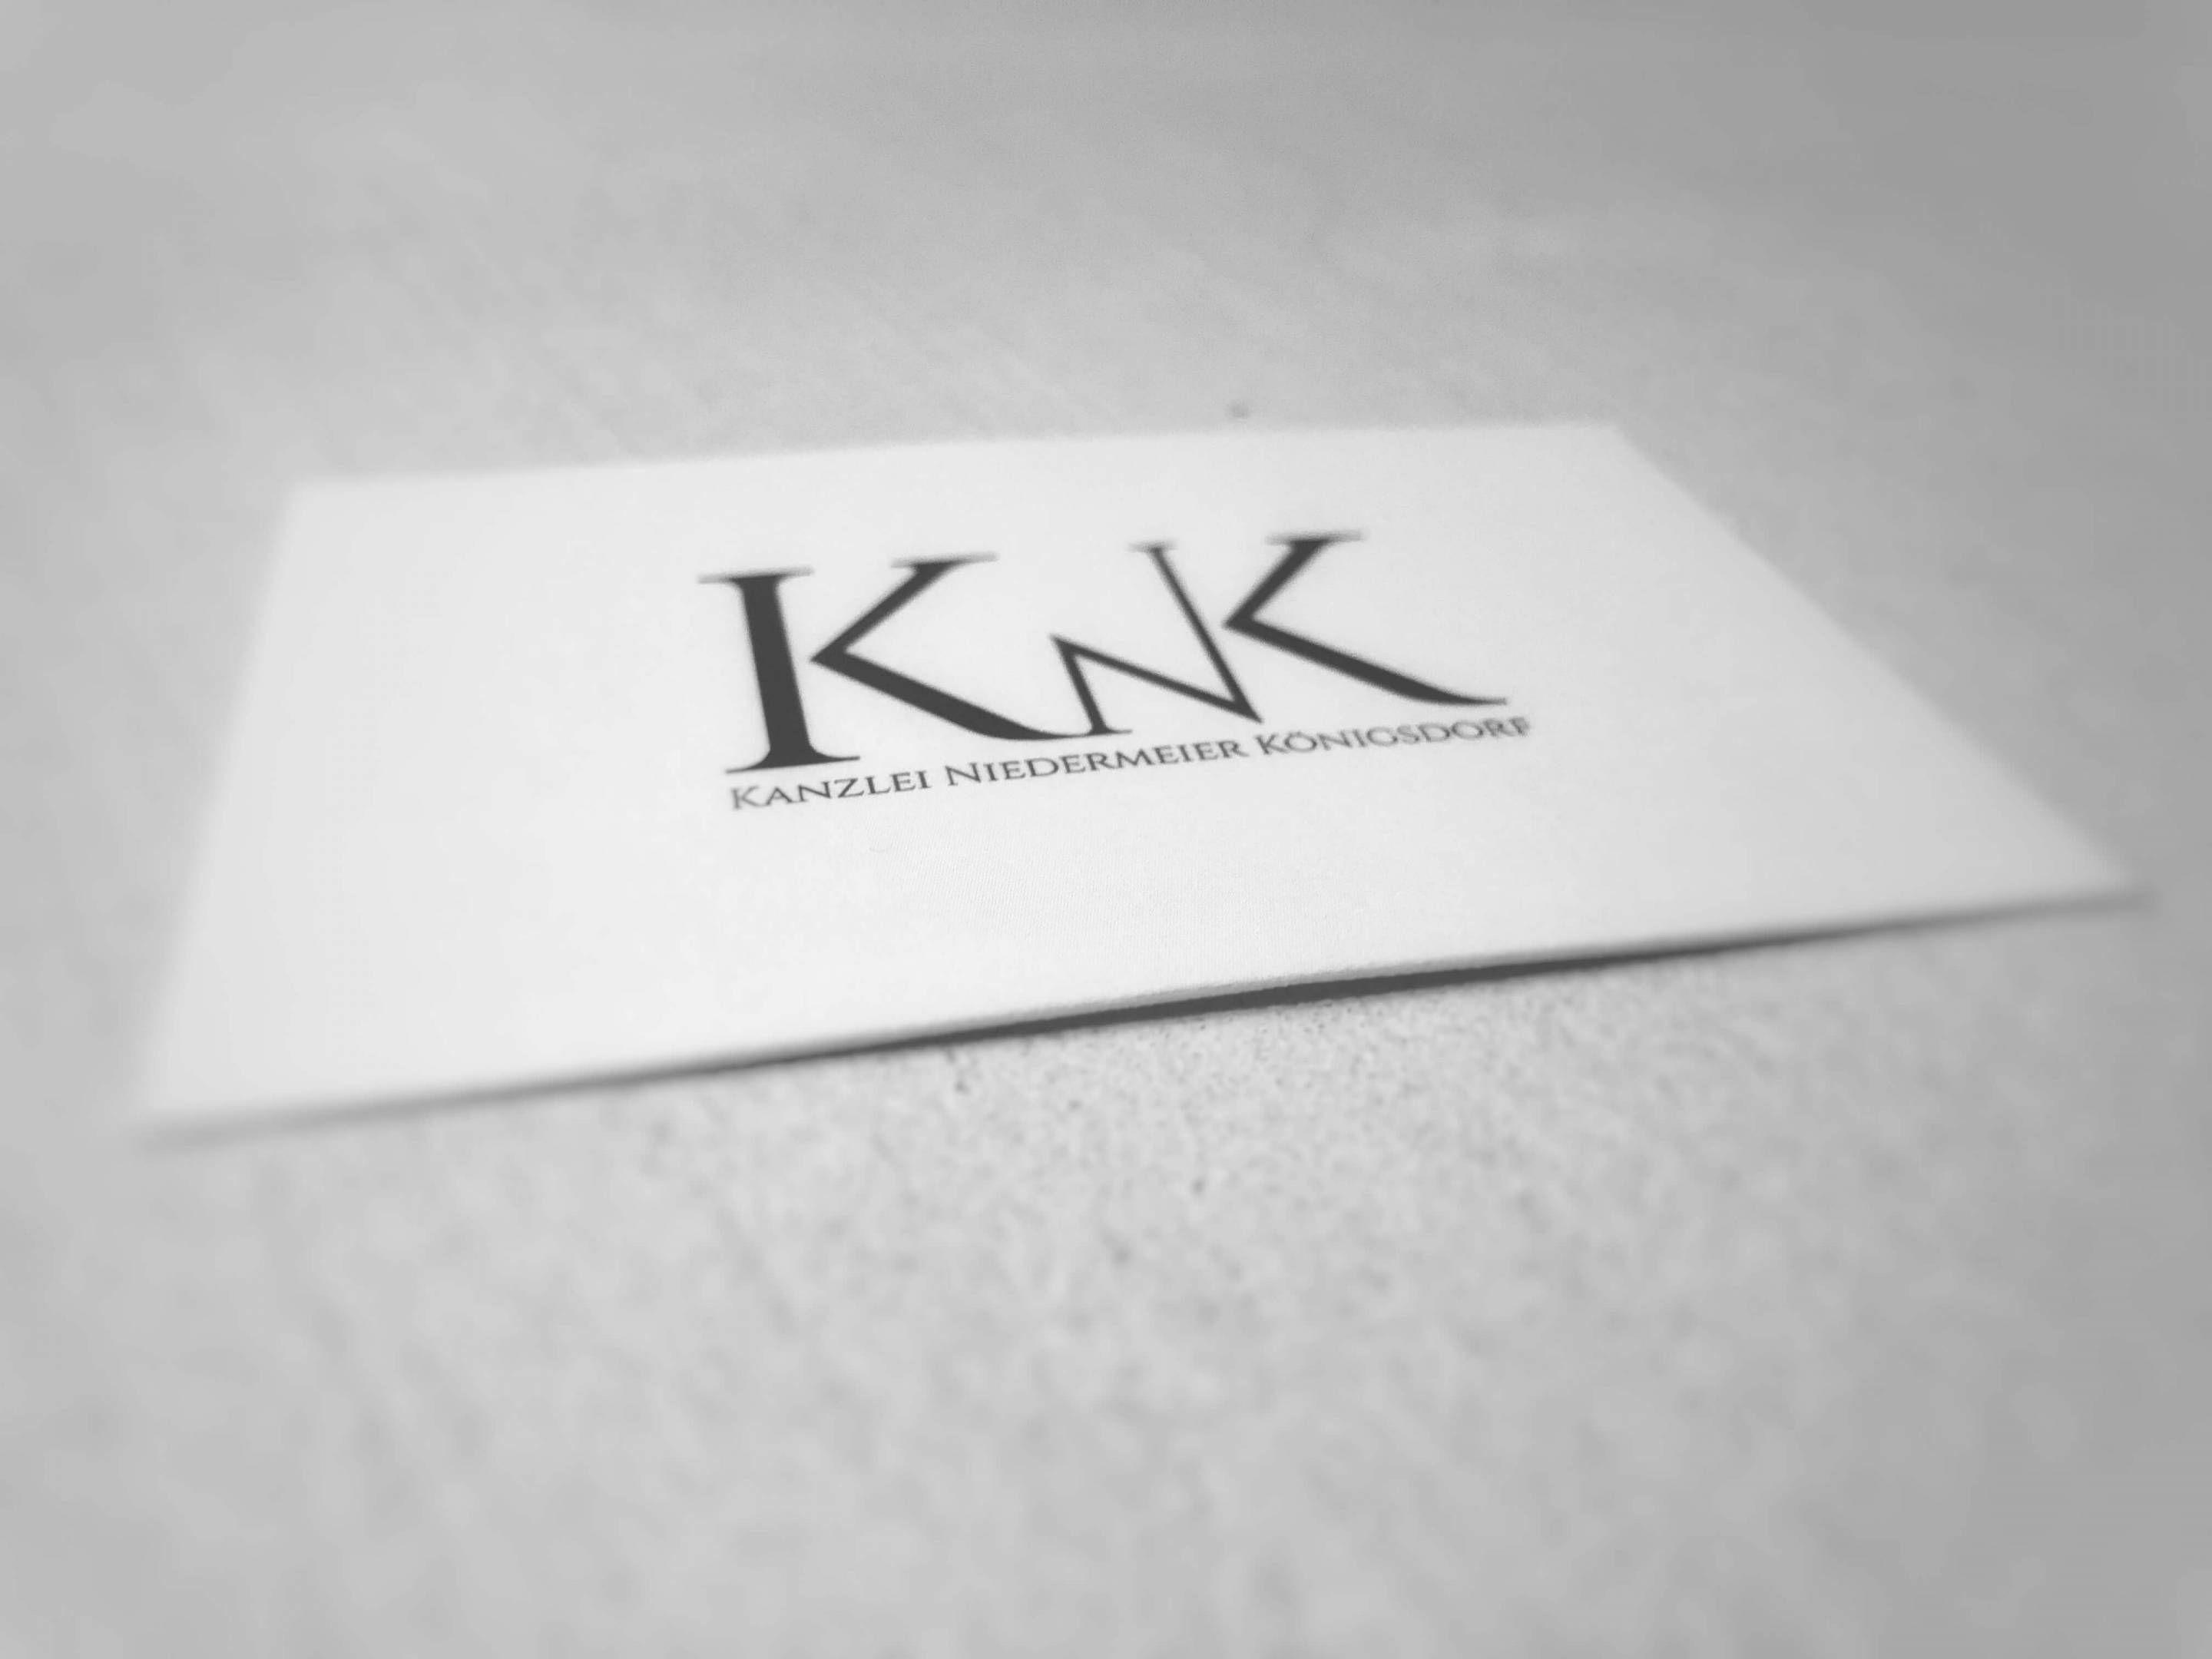 Knk Logo - KNK